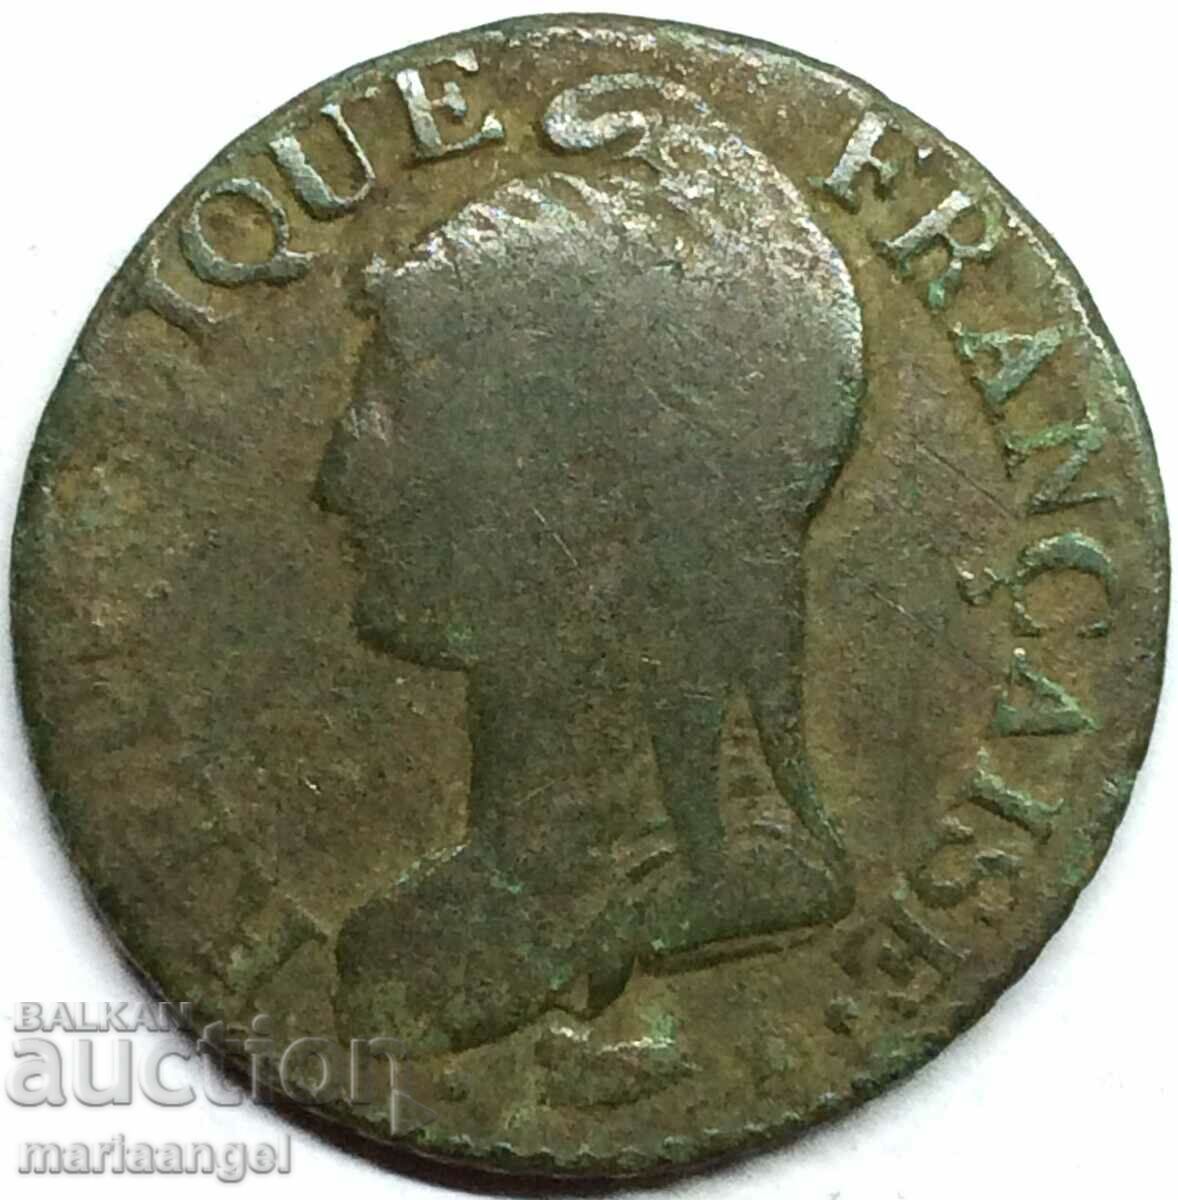 Γαλλία 5 centimes 1793 Lan 2 - σπάνιο έτος